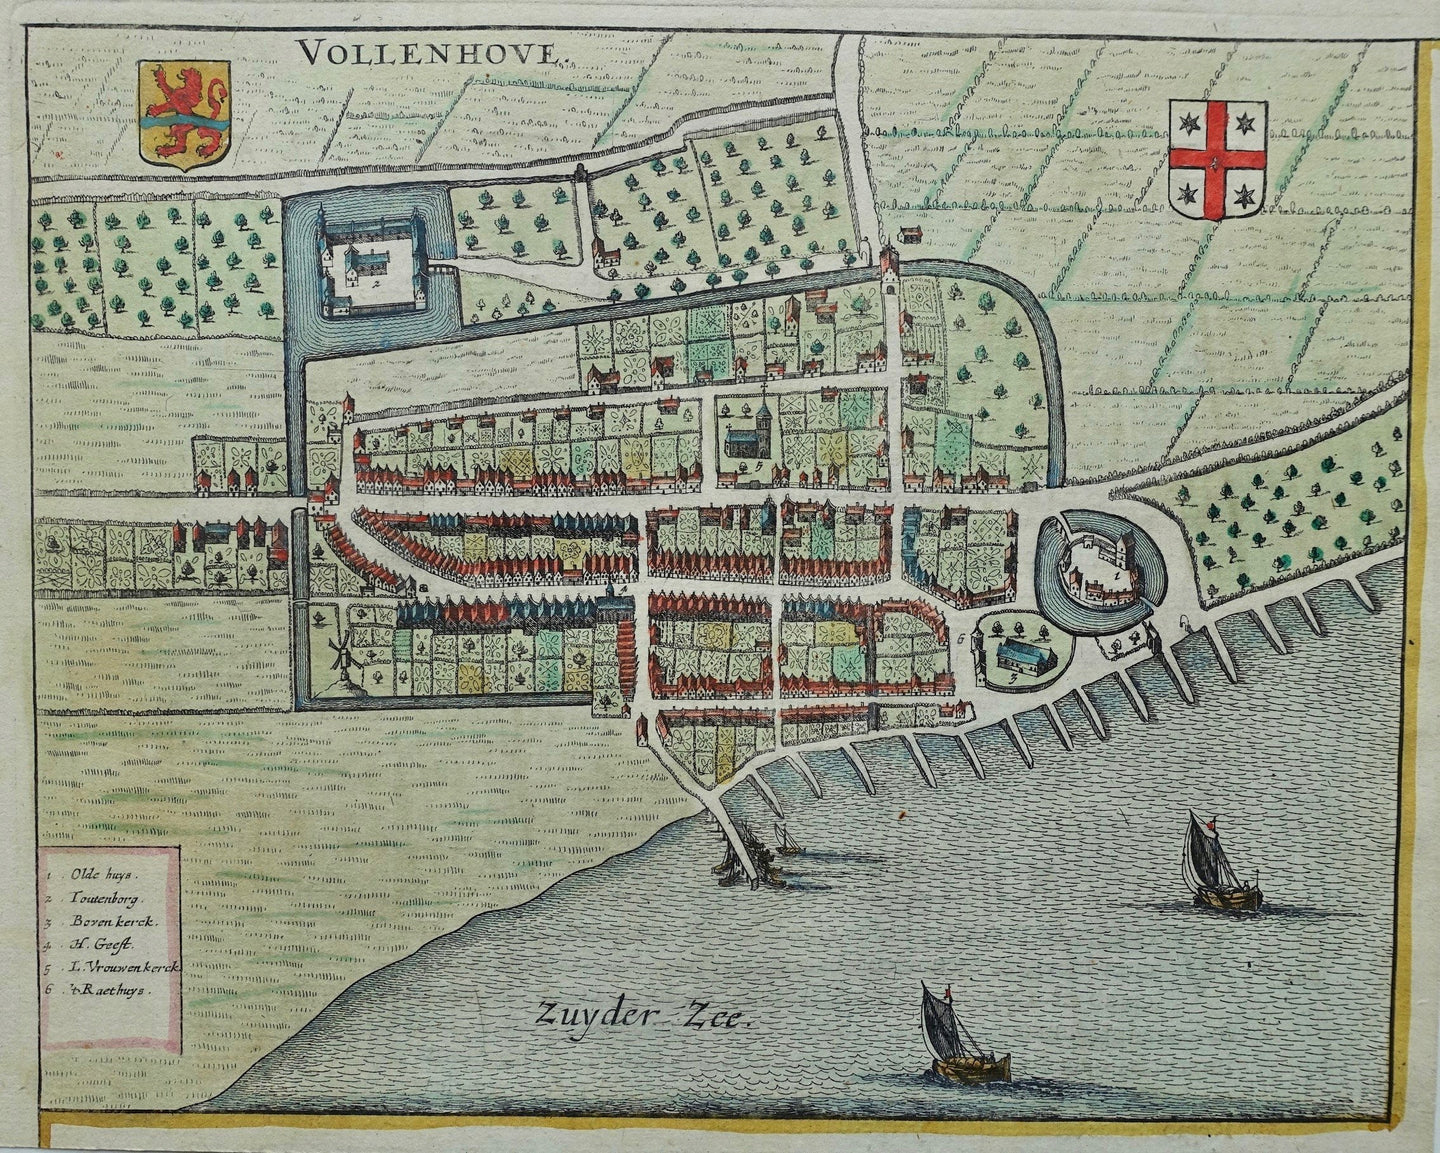 Vollenhove - Stadsplattegrond in vogelvluchtperspectief - J Janssonius - 1657